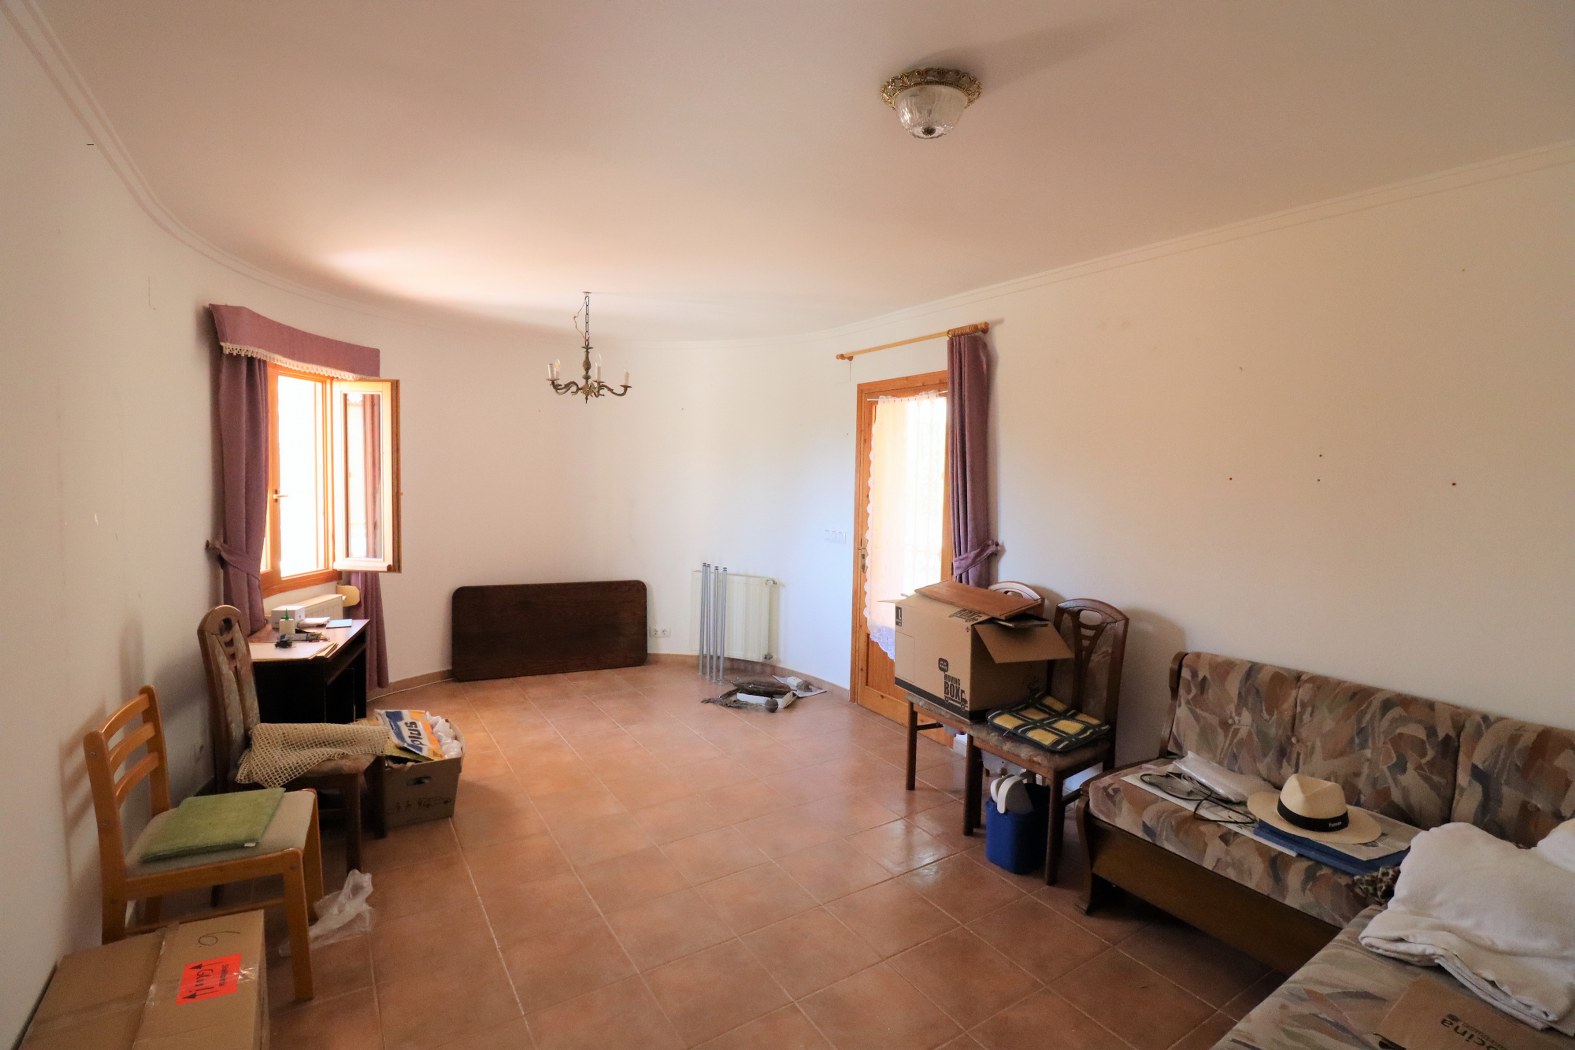 Villa with 2 bedrooms, Pool, Tormos